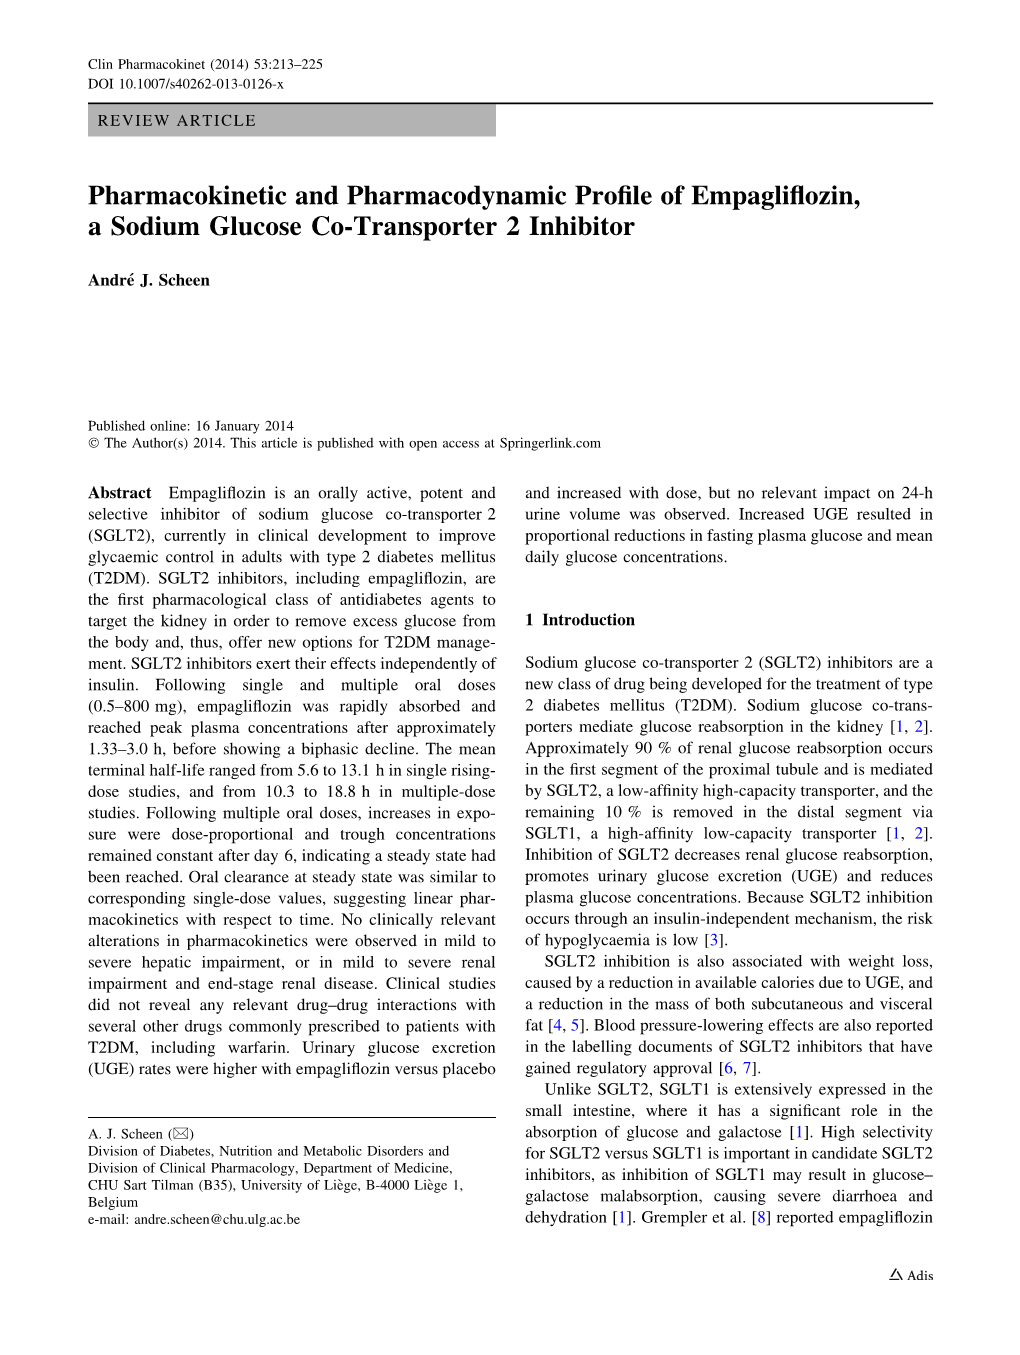 Pharmacokinetic and Pharmacodynamic Profile